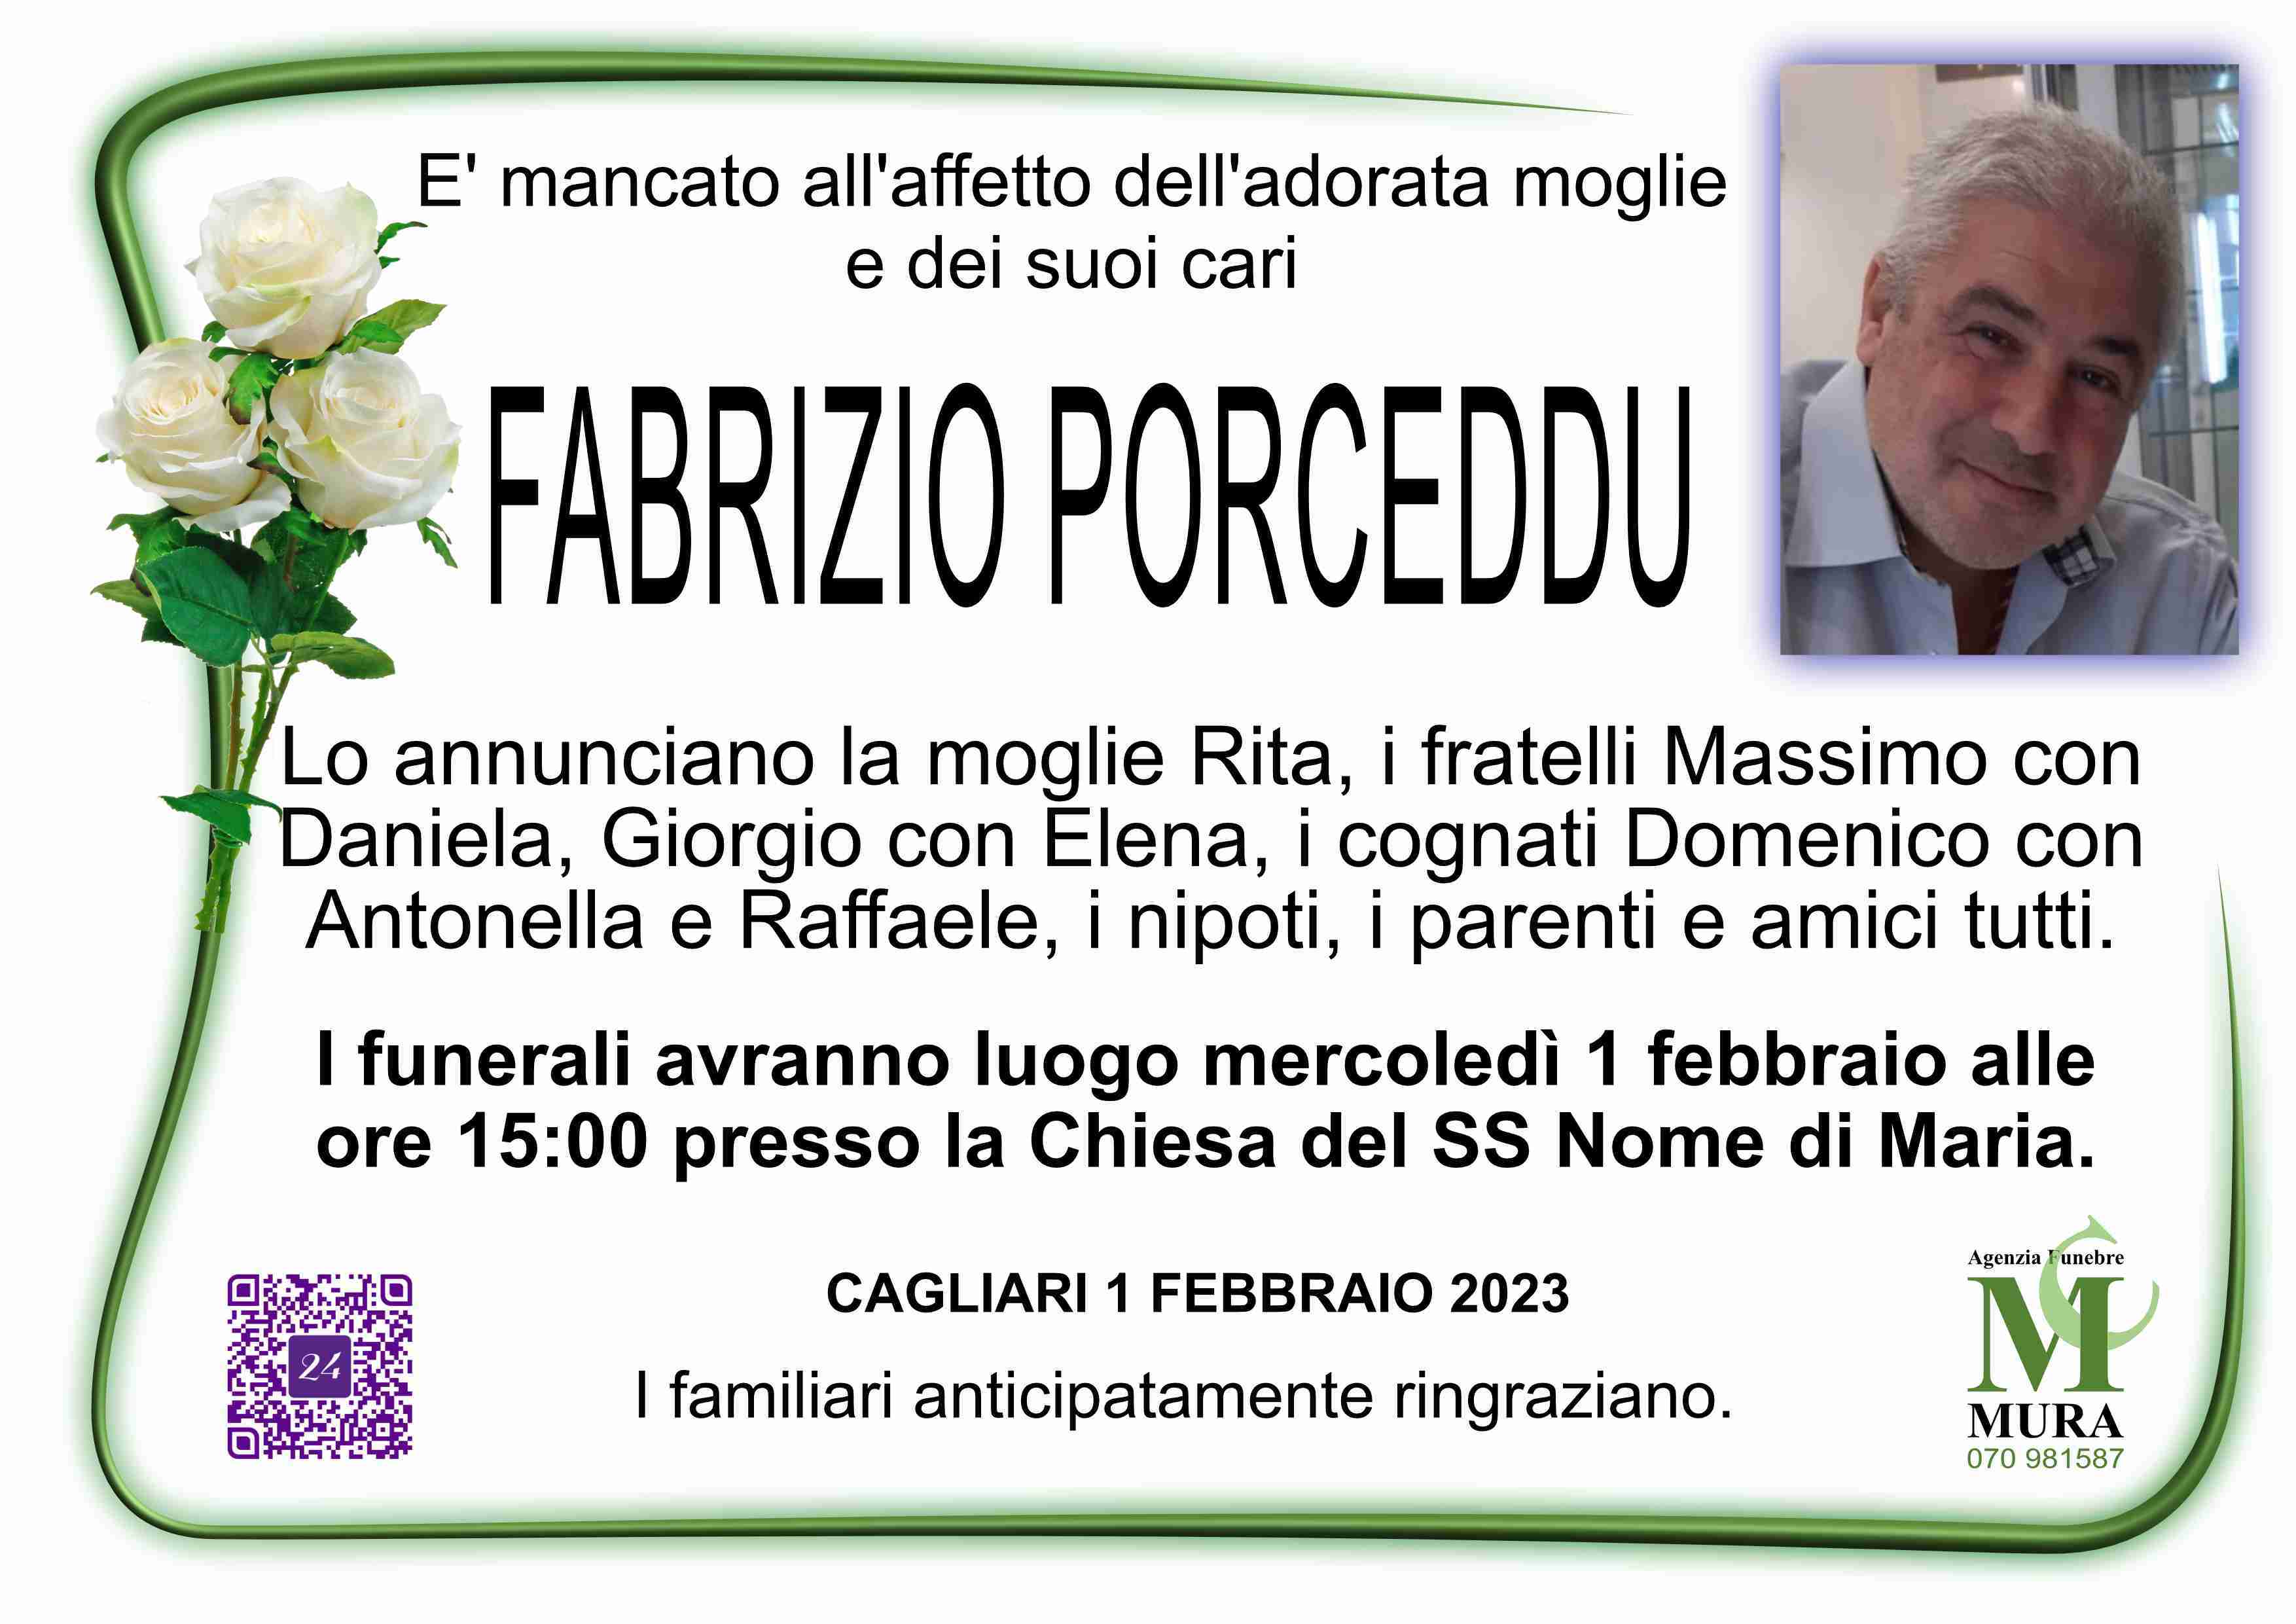 Fabrizio Porceddu